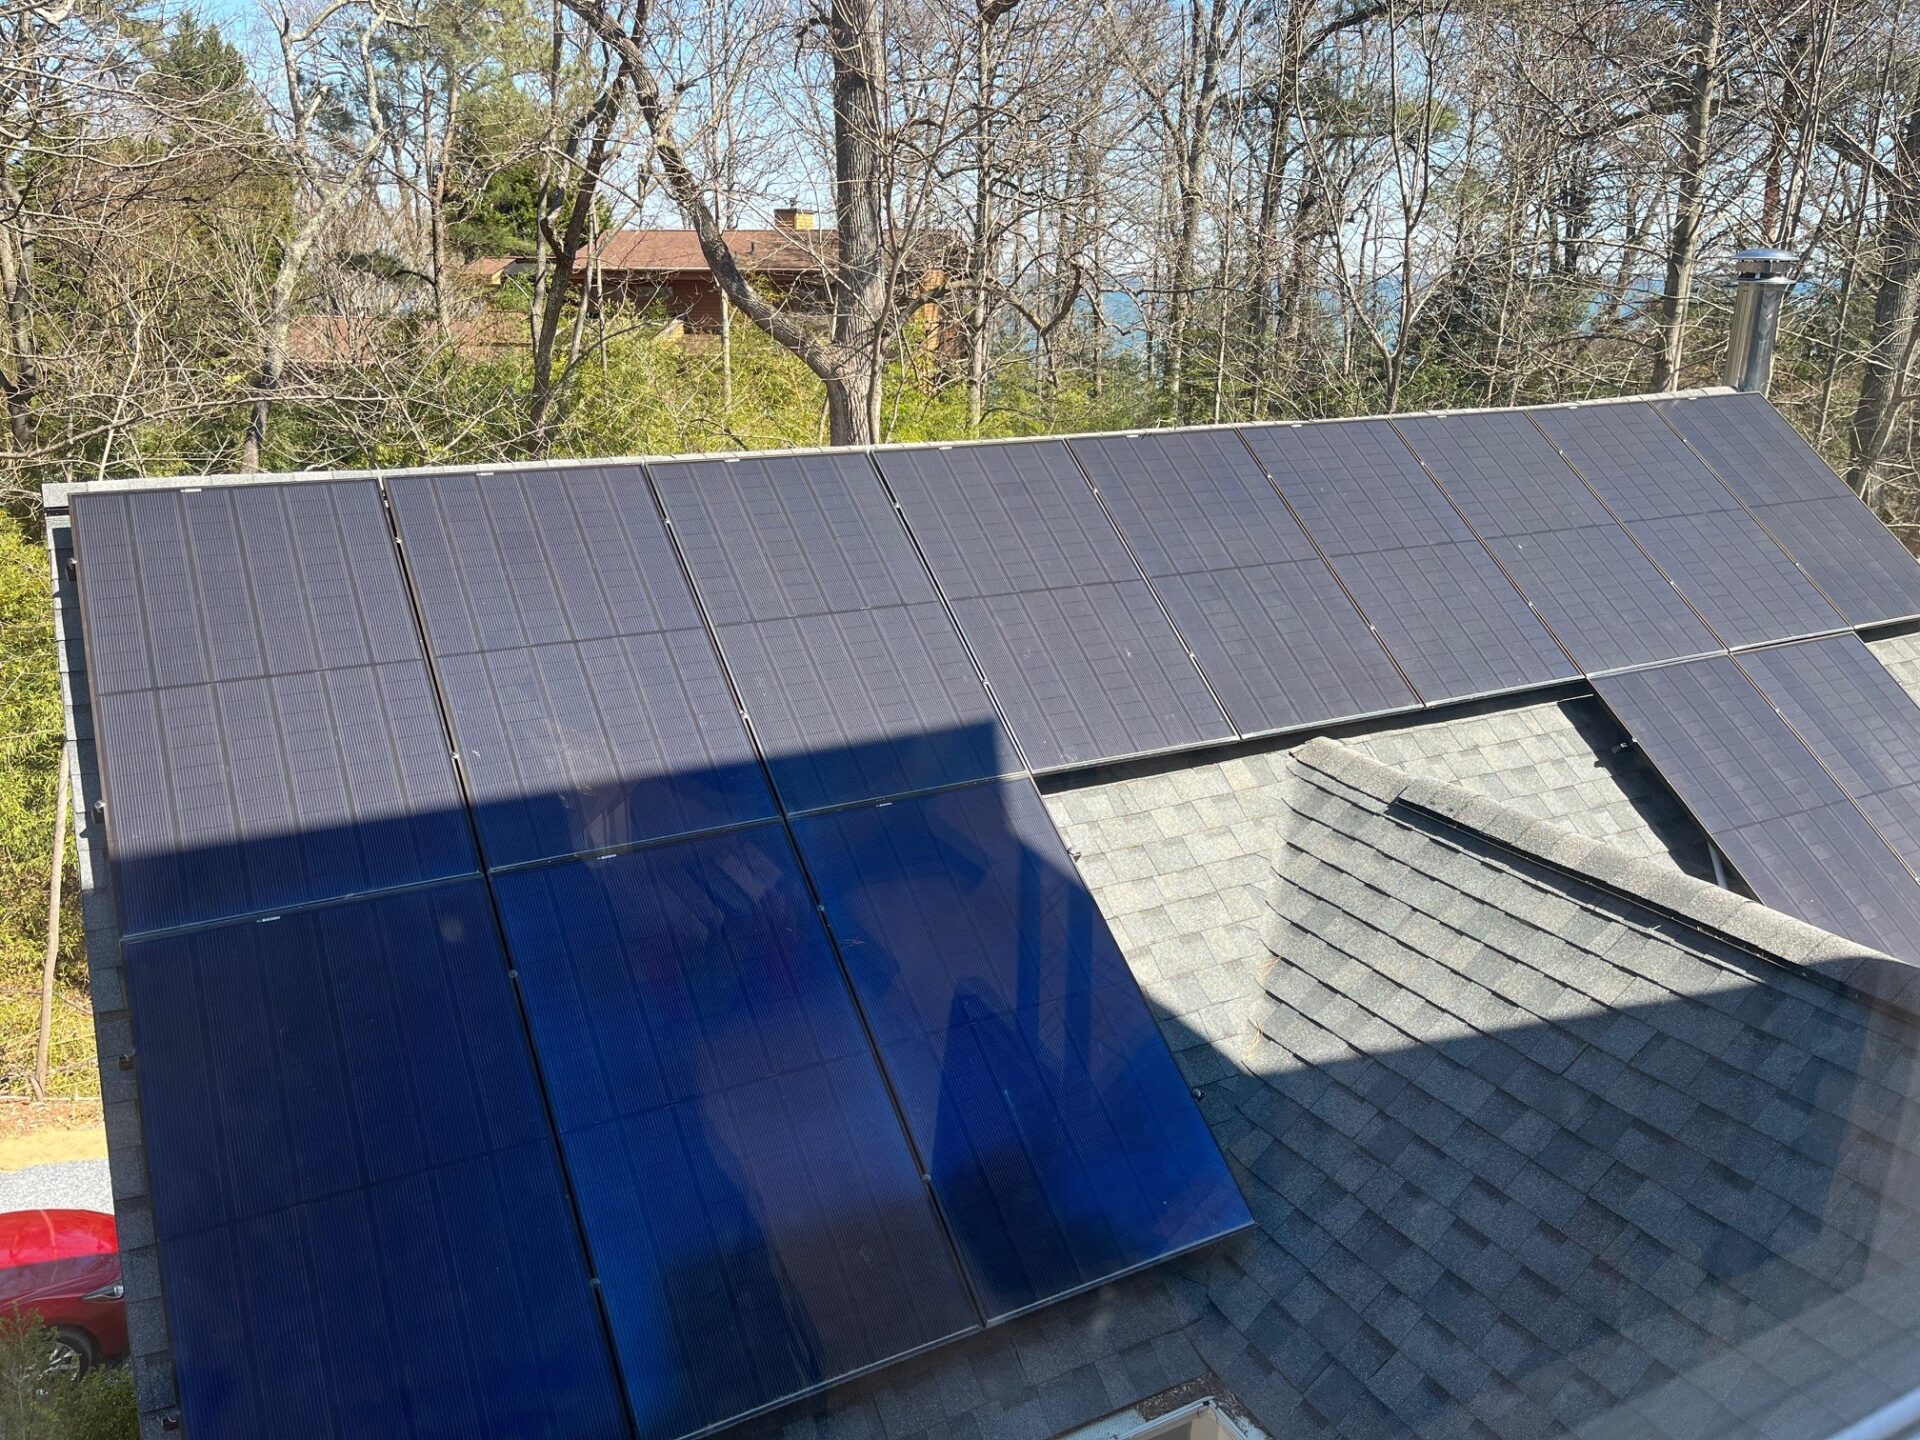 Mon Power, Consumer Groups Settle Solar Net Metering Case